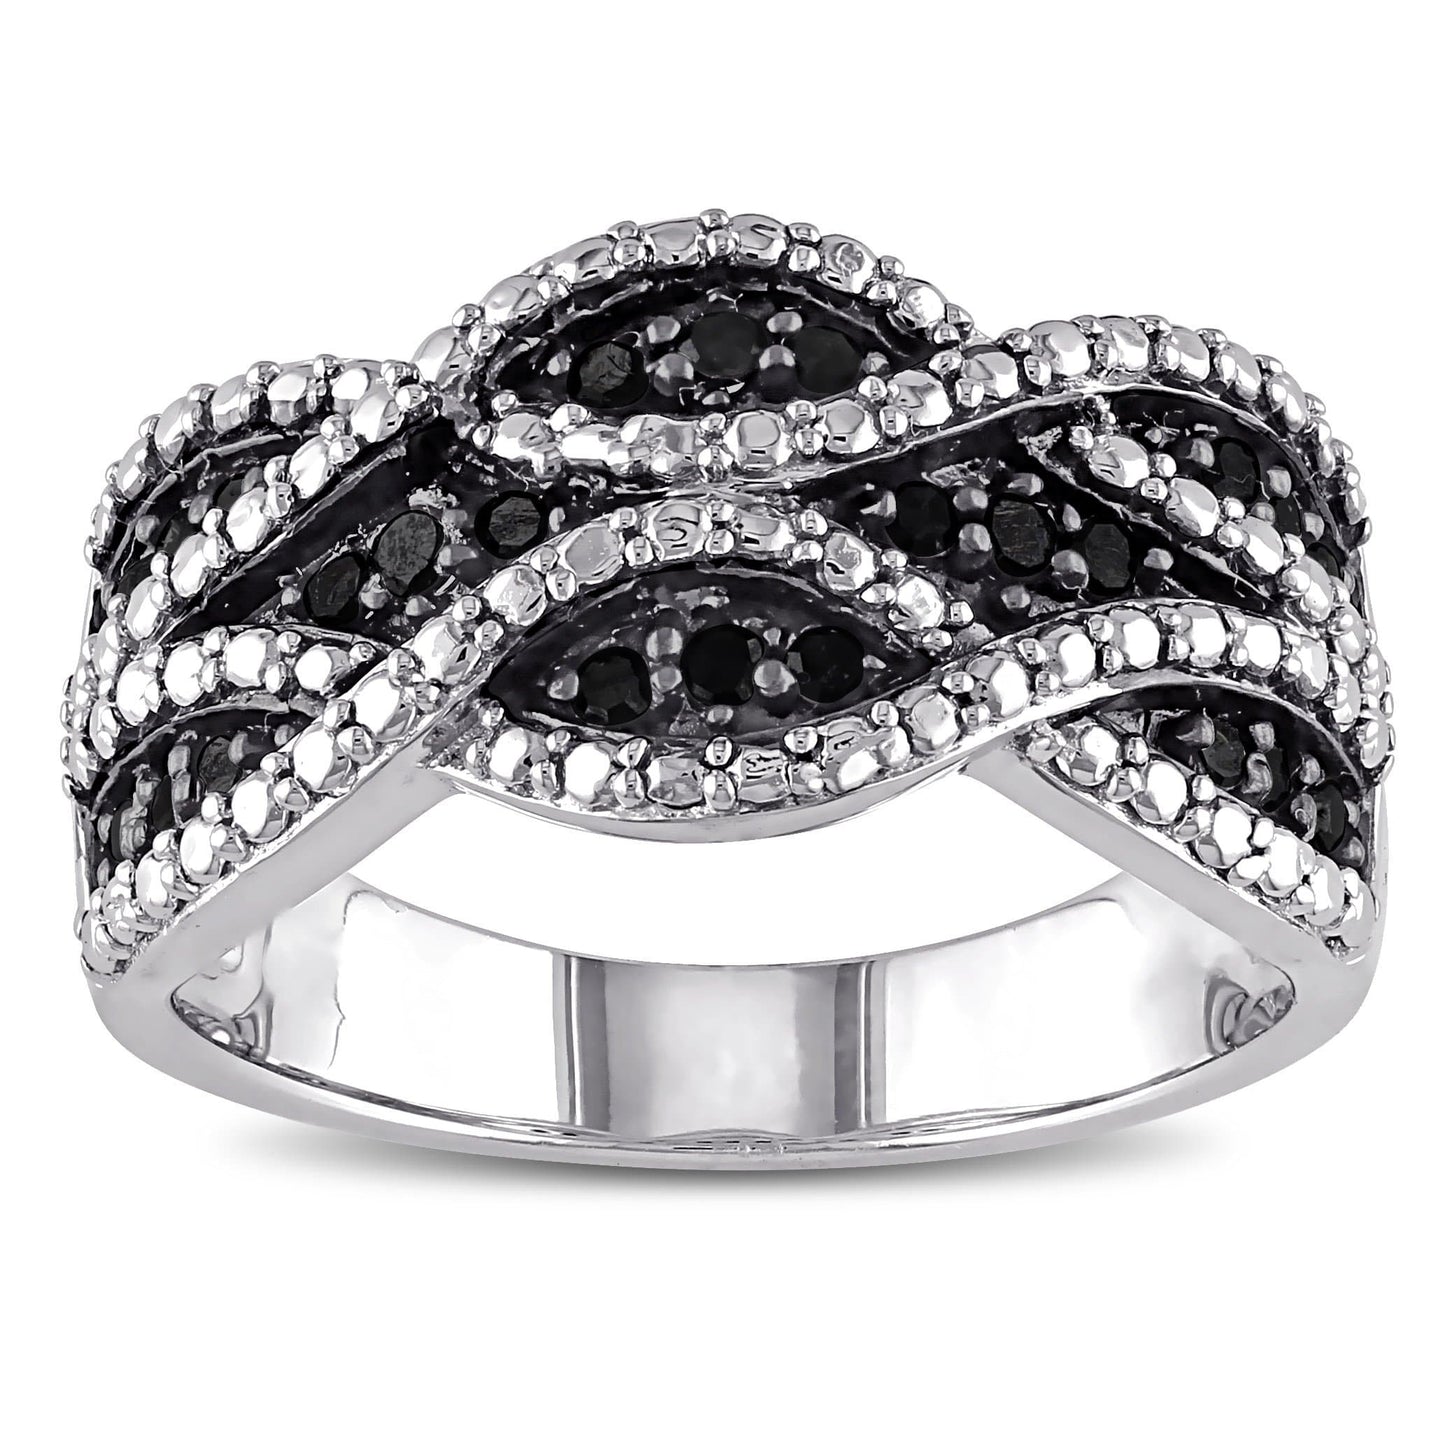 Sophia B Black Diamond Ring in Sterling Silver